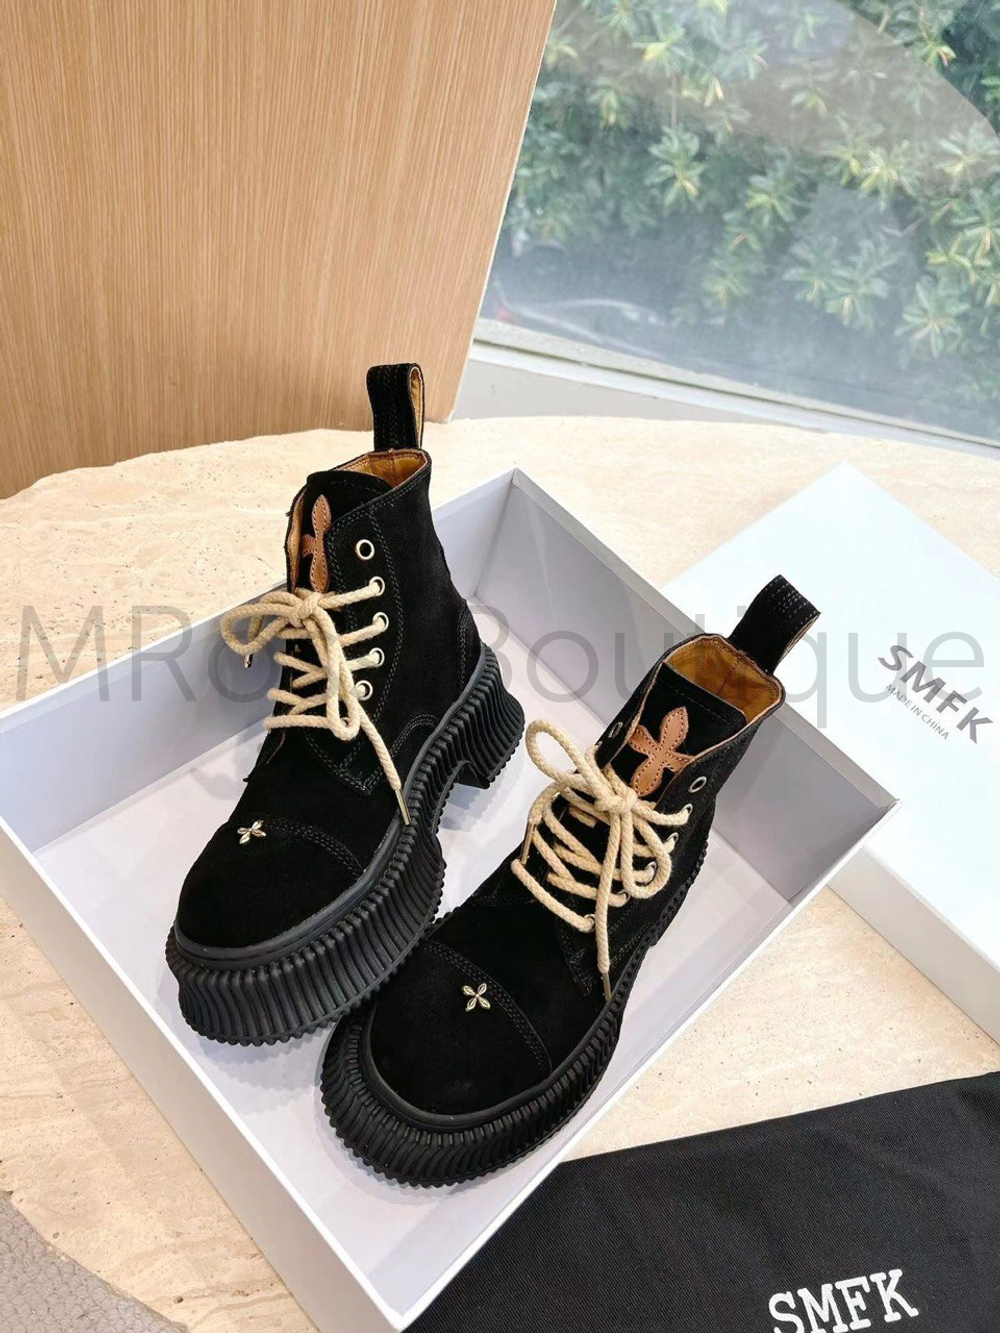 Женские черные ботинки на толстой подошве SMFK Compass Gingerbread Desert премиум класса